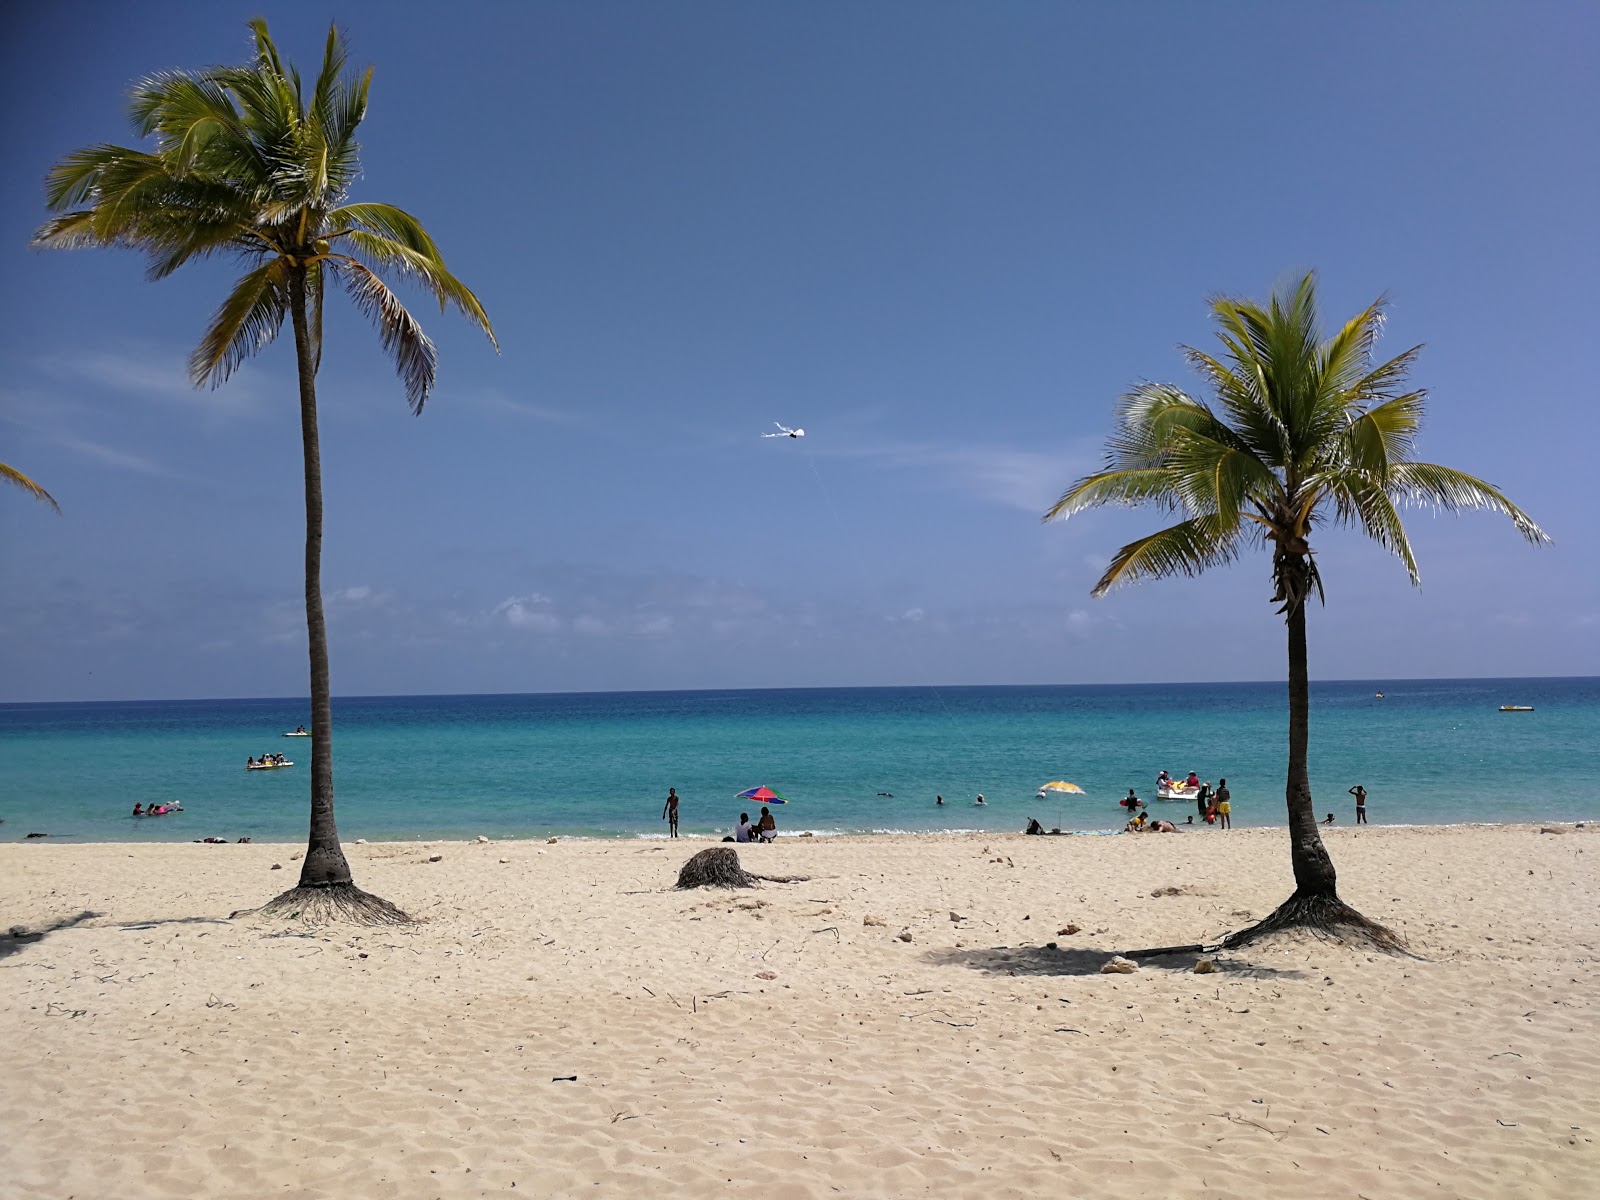 Playa St.Maria del Mar'in fotoğrafı geniş plaj ile birlikte